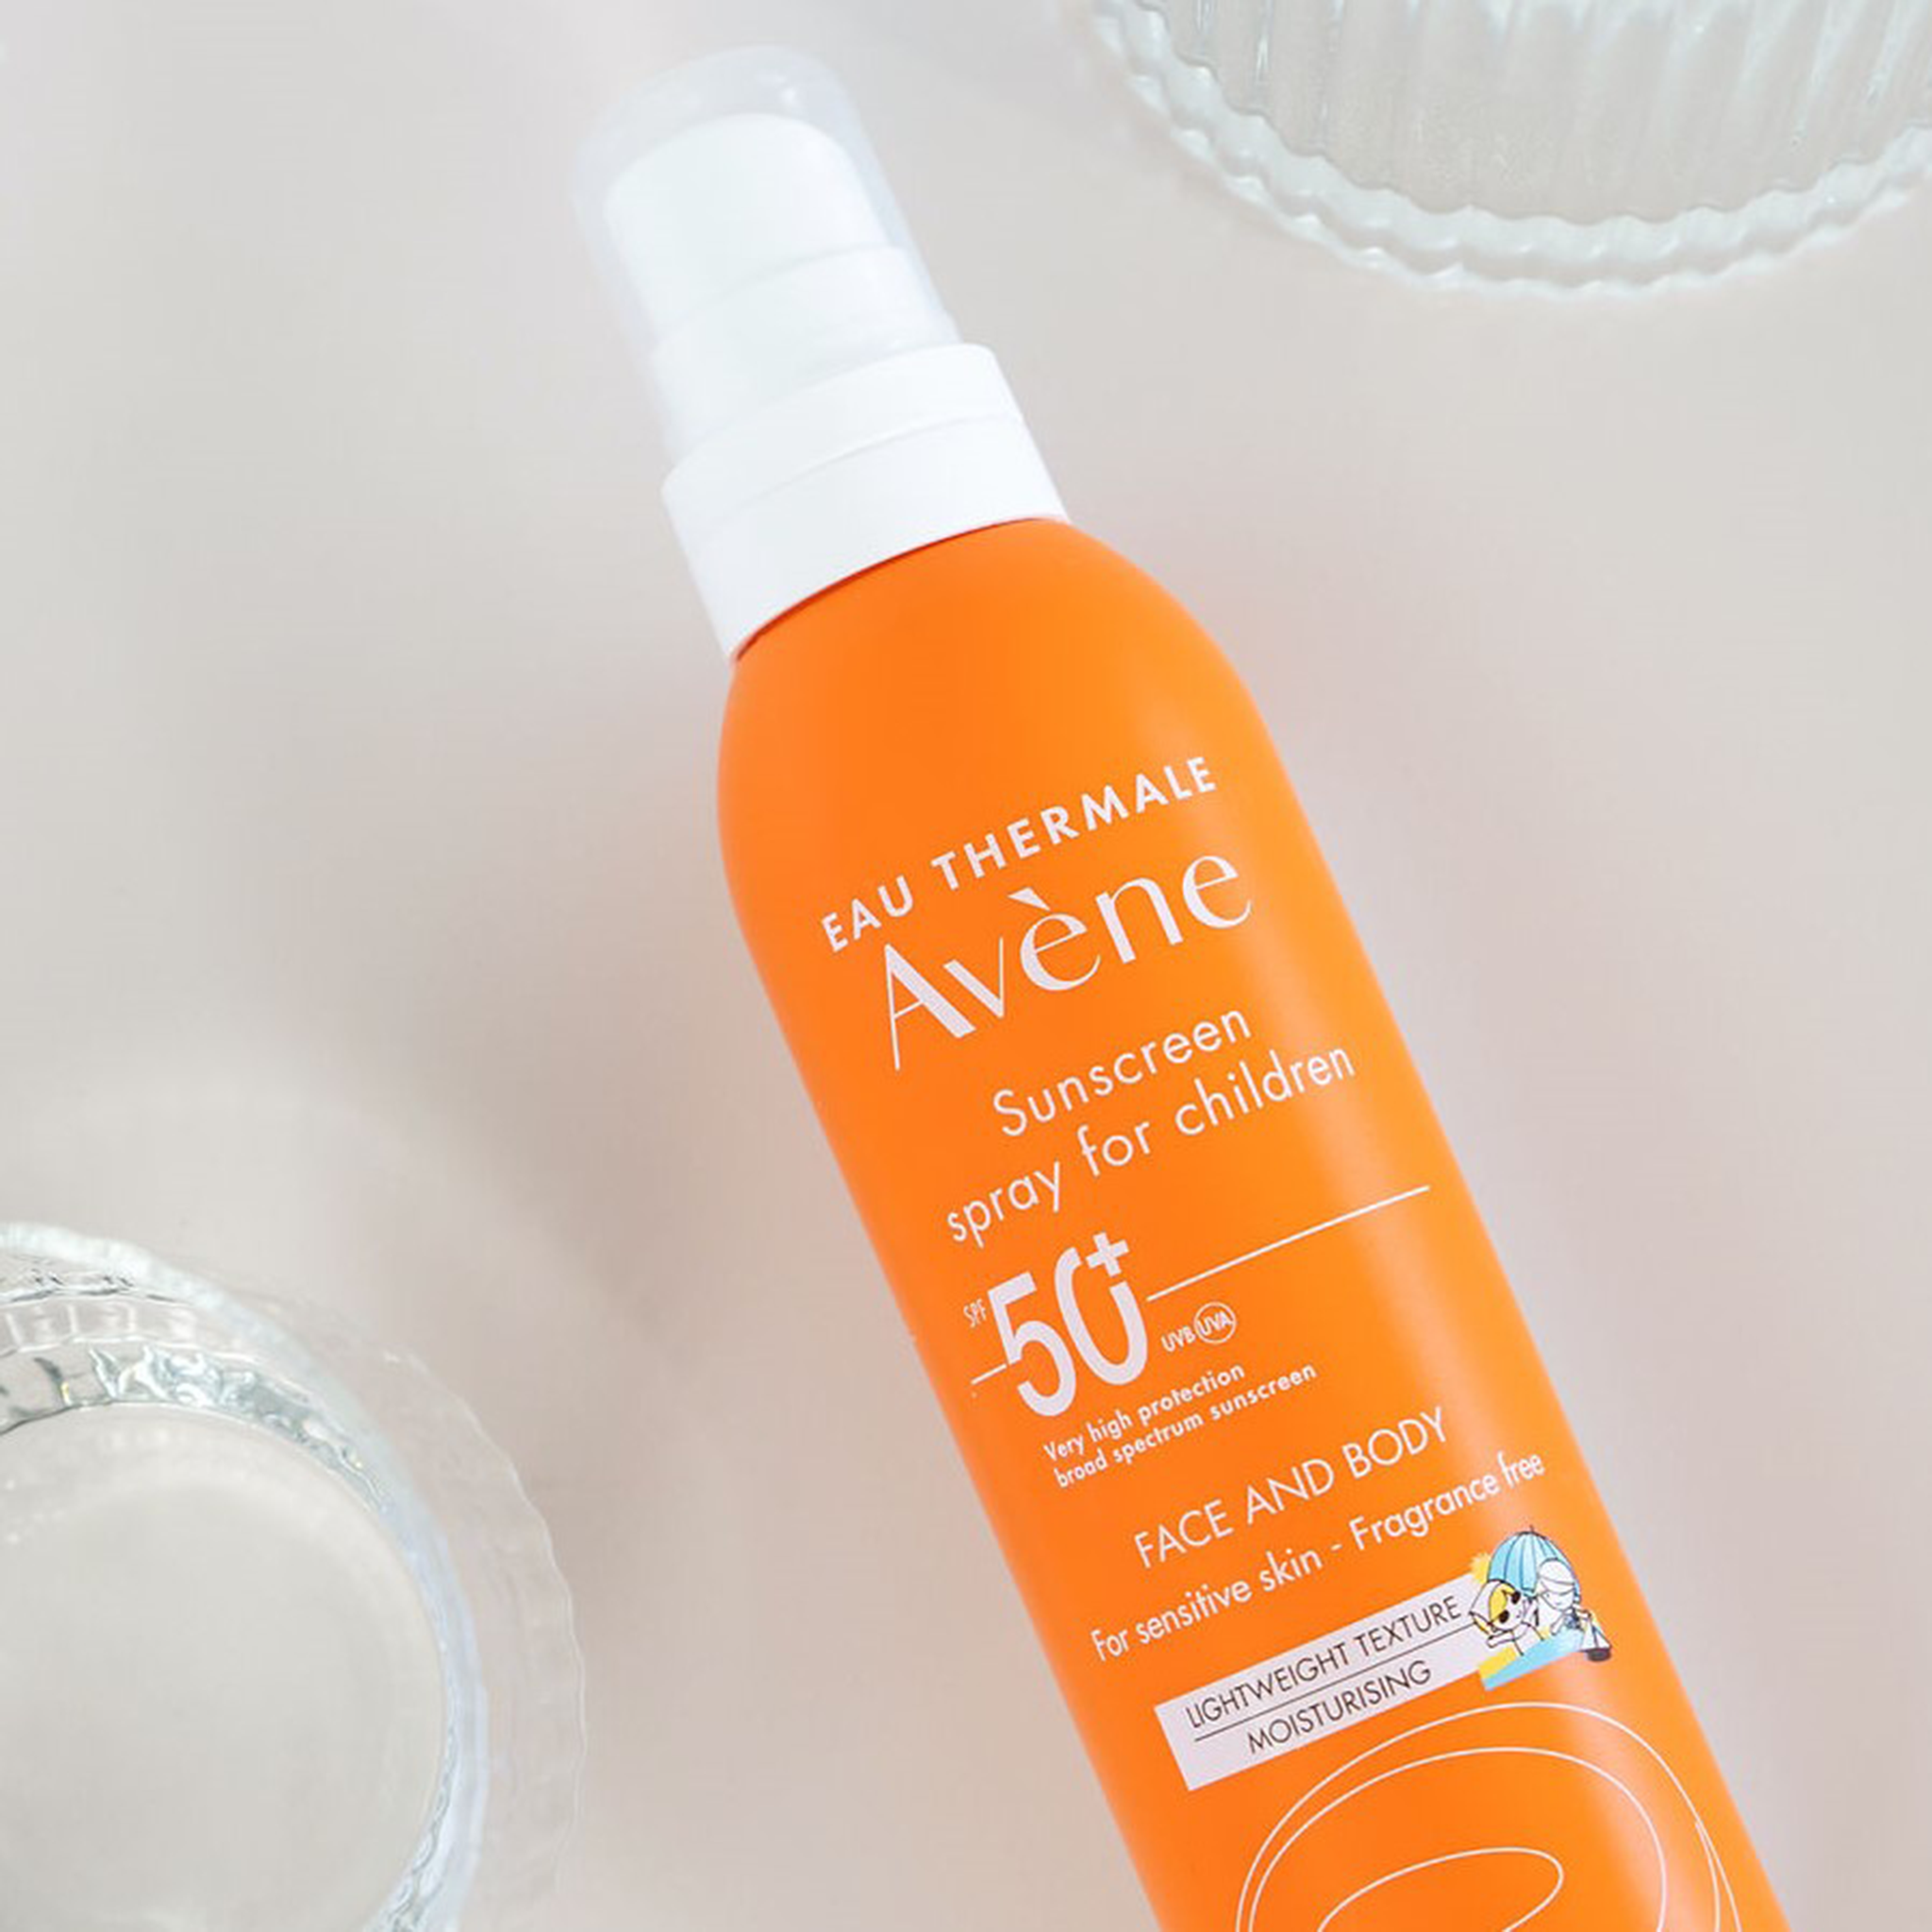 Avène Sunscreen Spray for Children SPF 50+ 200ml - For Kids Sensitive Skin